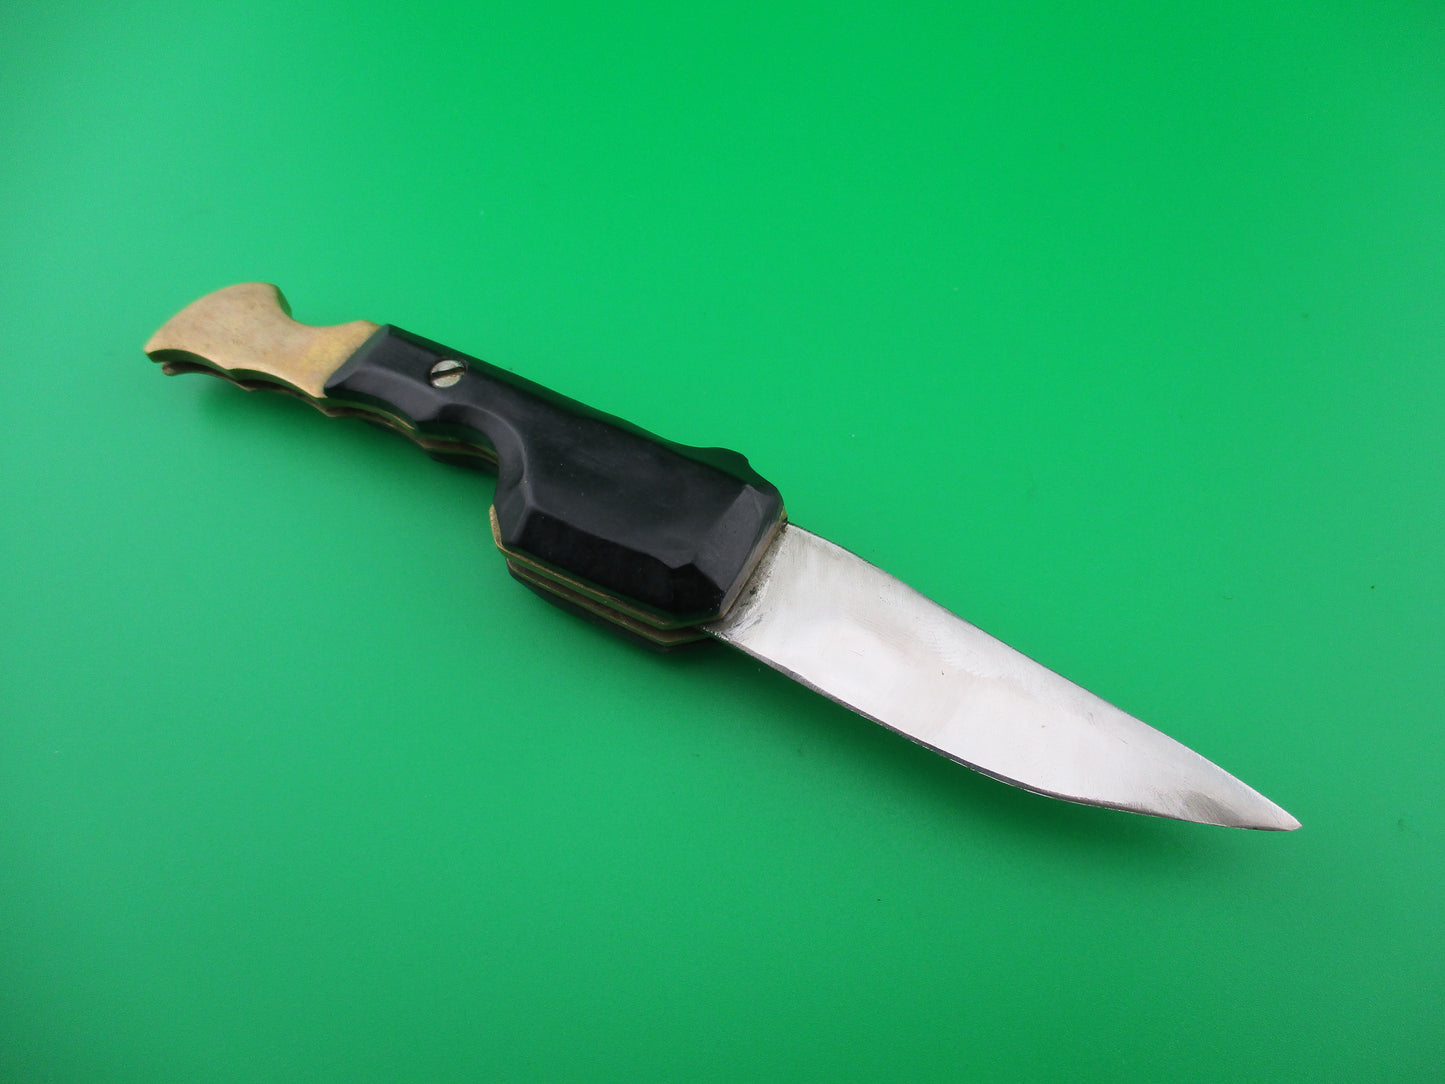 RPK 15cm Russian Prison Knife Black Scale release automatic knife